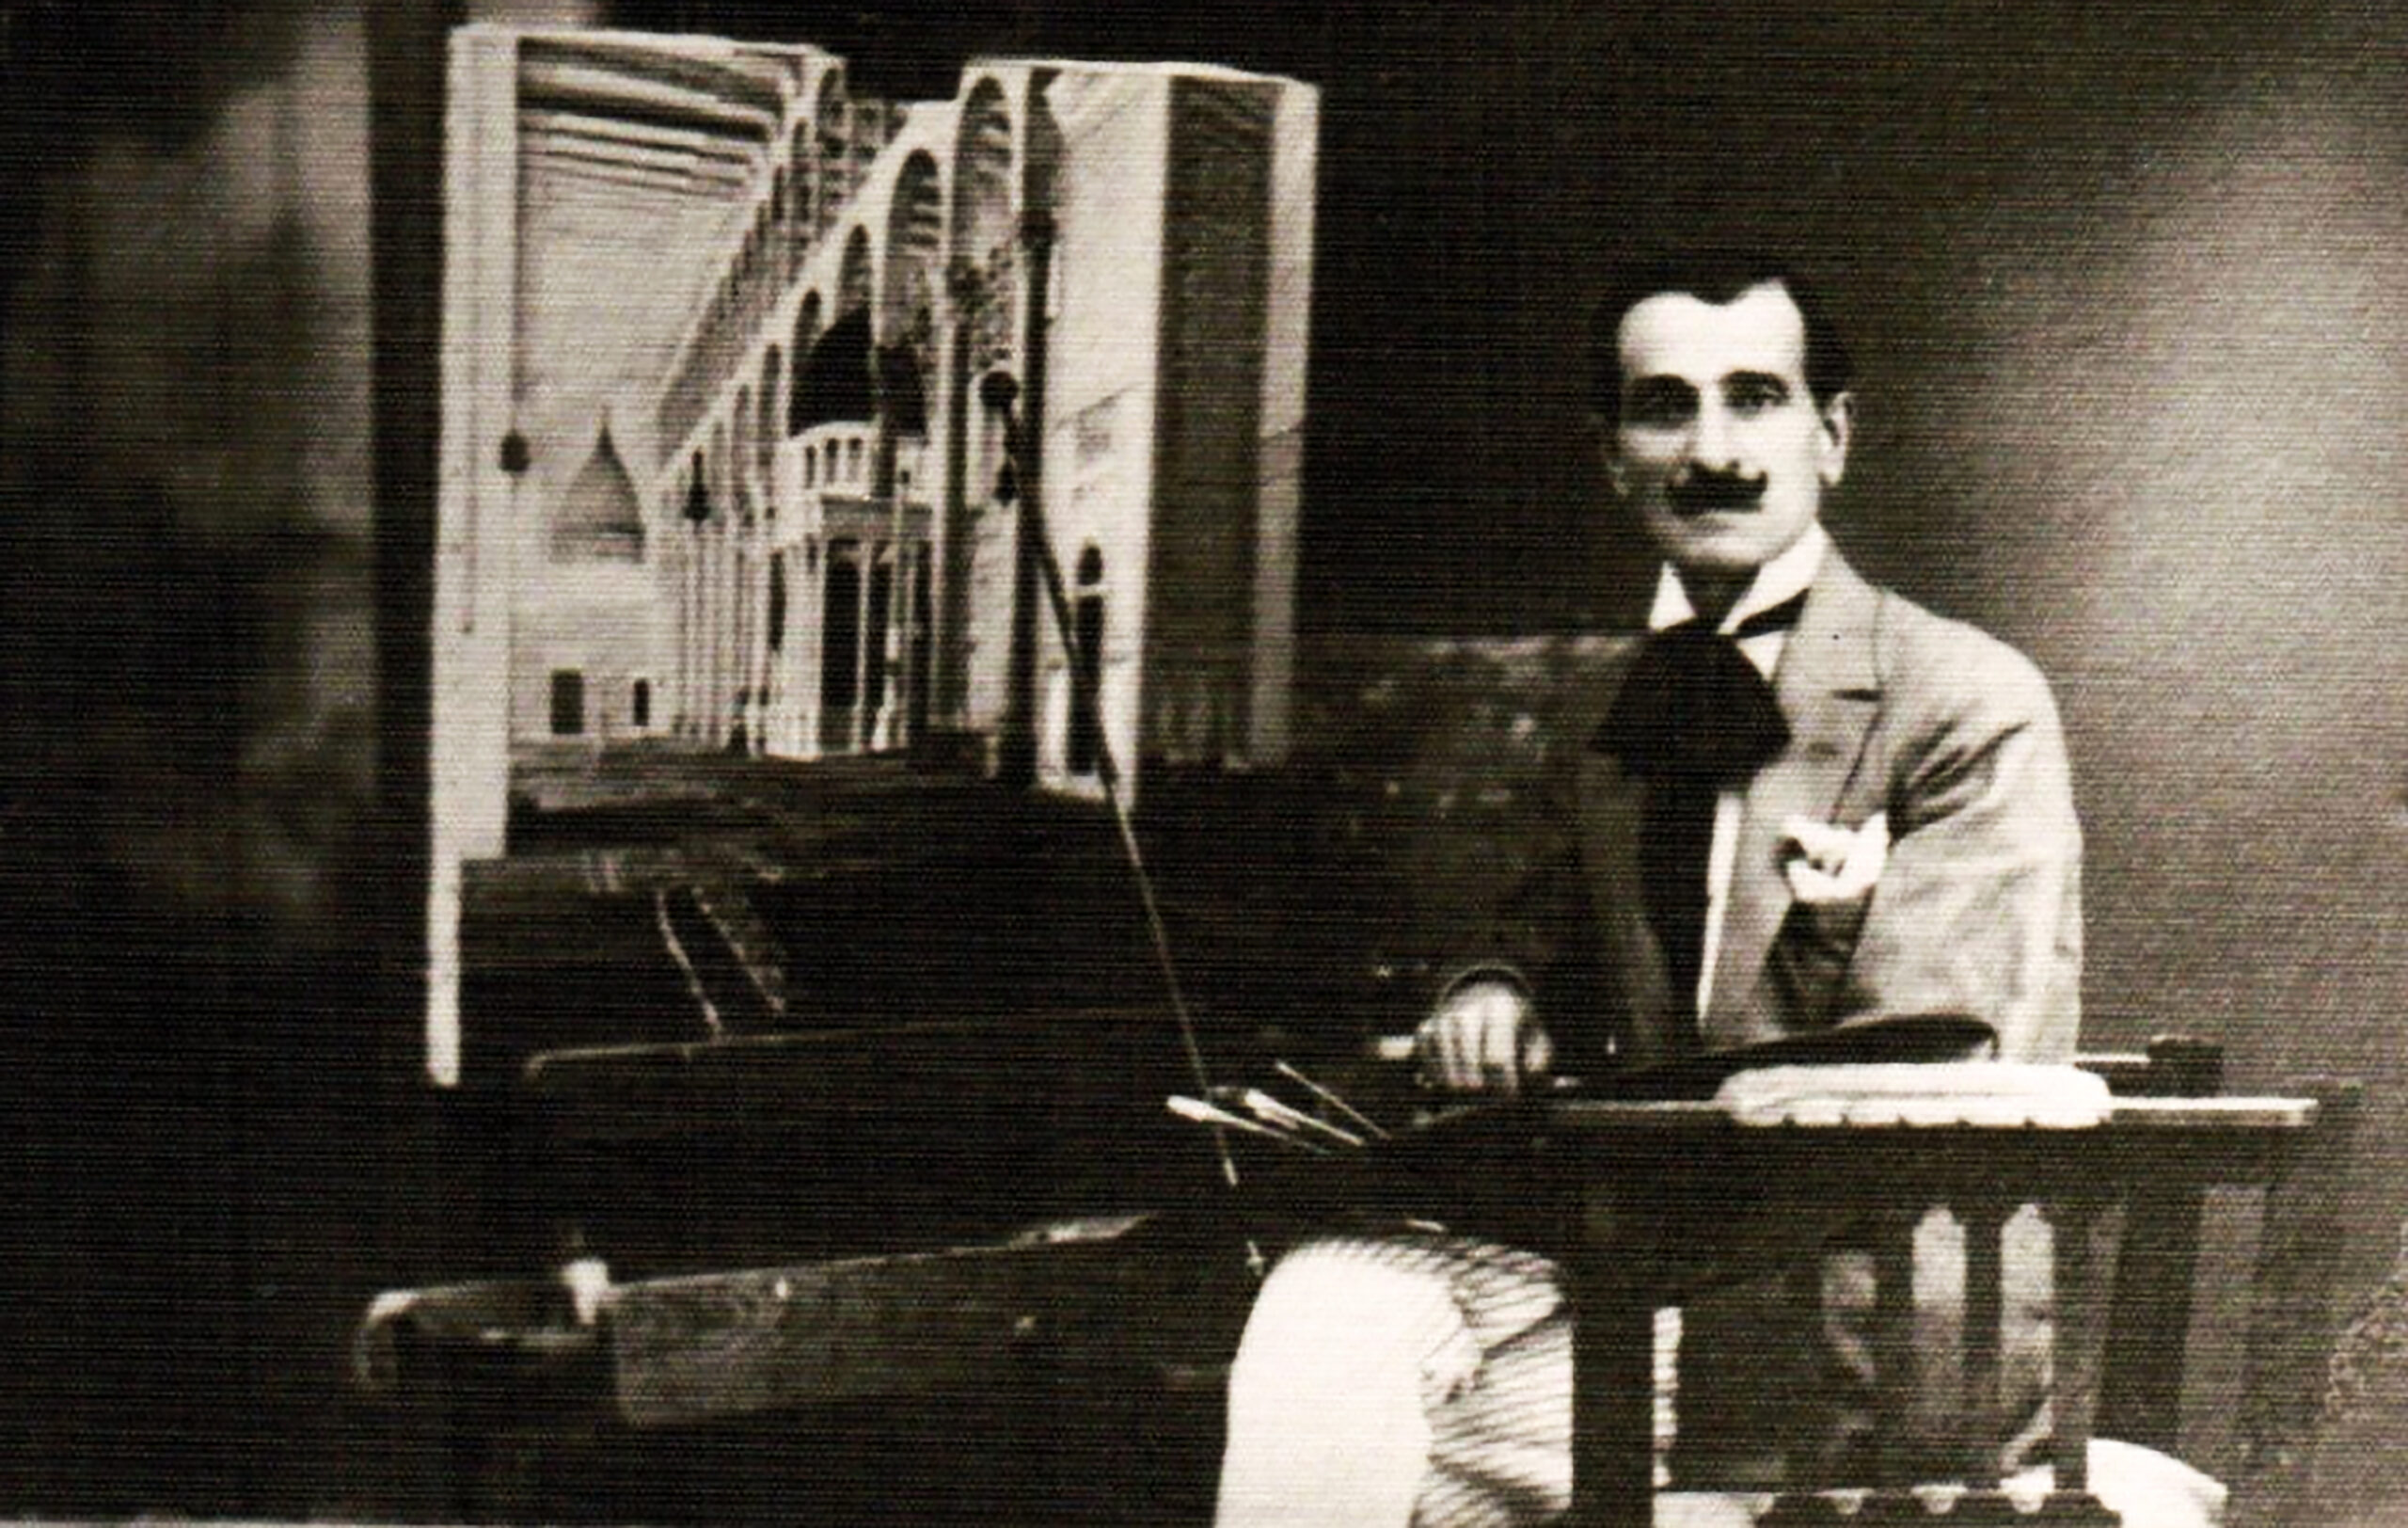 التاريخ السوري المعاصر - تاريخ تأسيس الجمعيات الفنية بدمشق في القرن العشرين منذ بداية ظهورها وحتى عام 1971